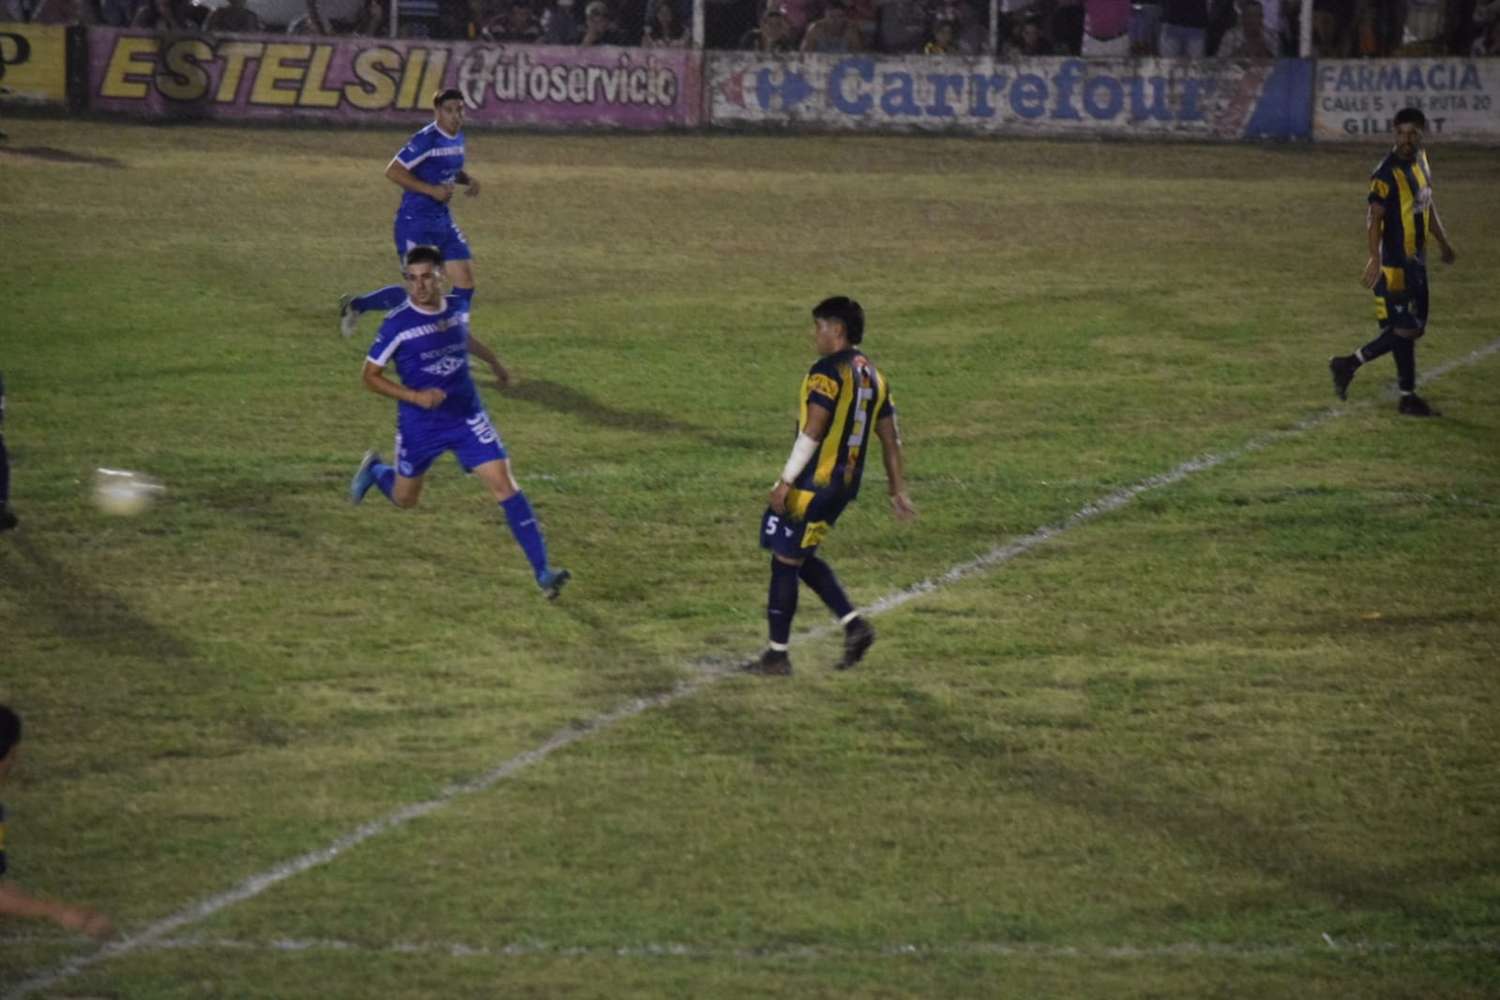 Con un gol agónico, Juventud Urdinarrain venció a Deportivo en un partidazo